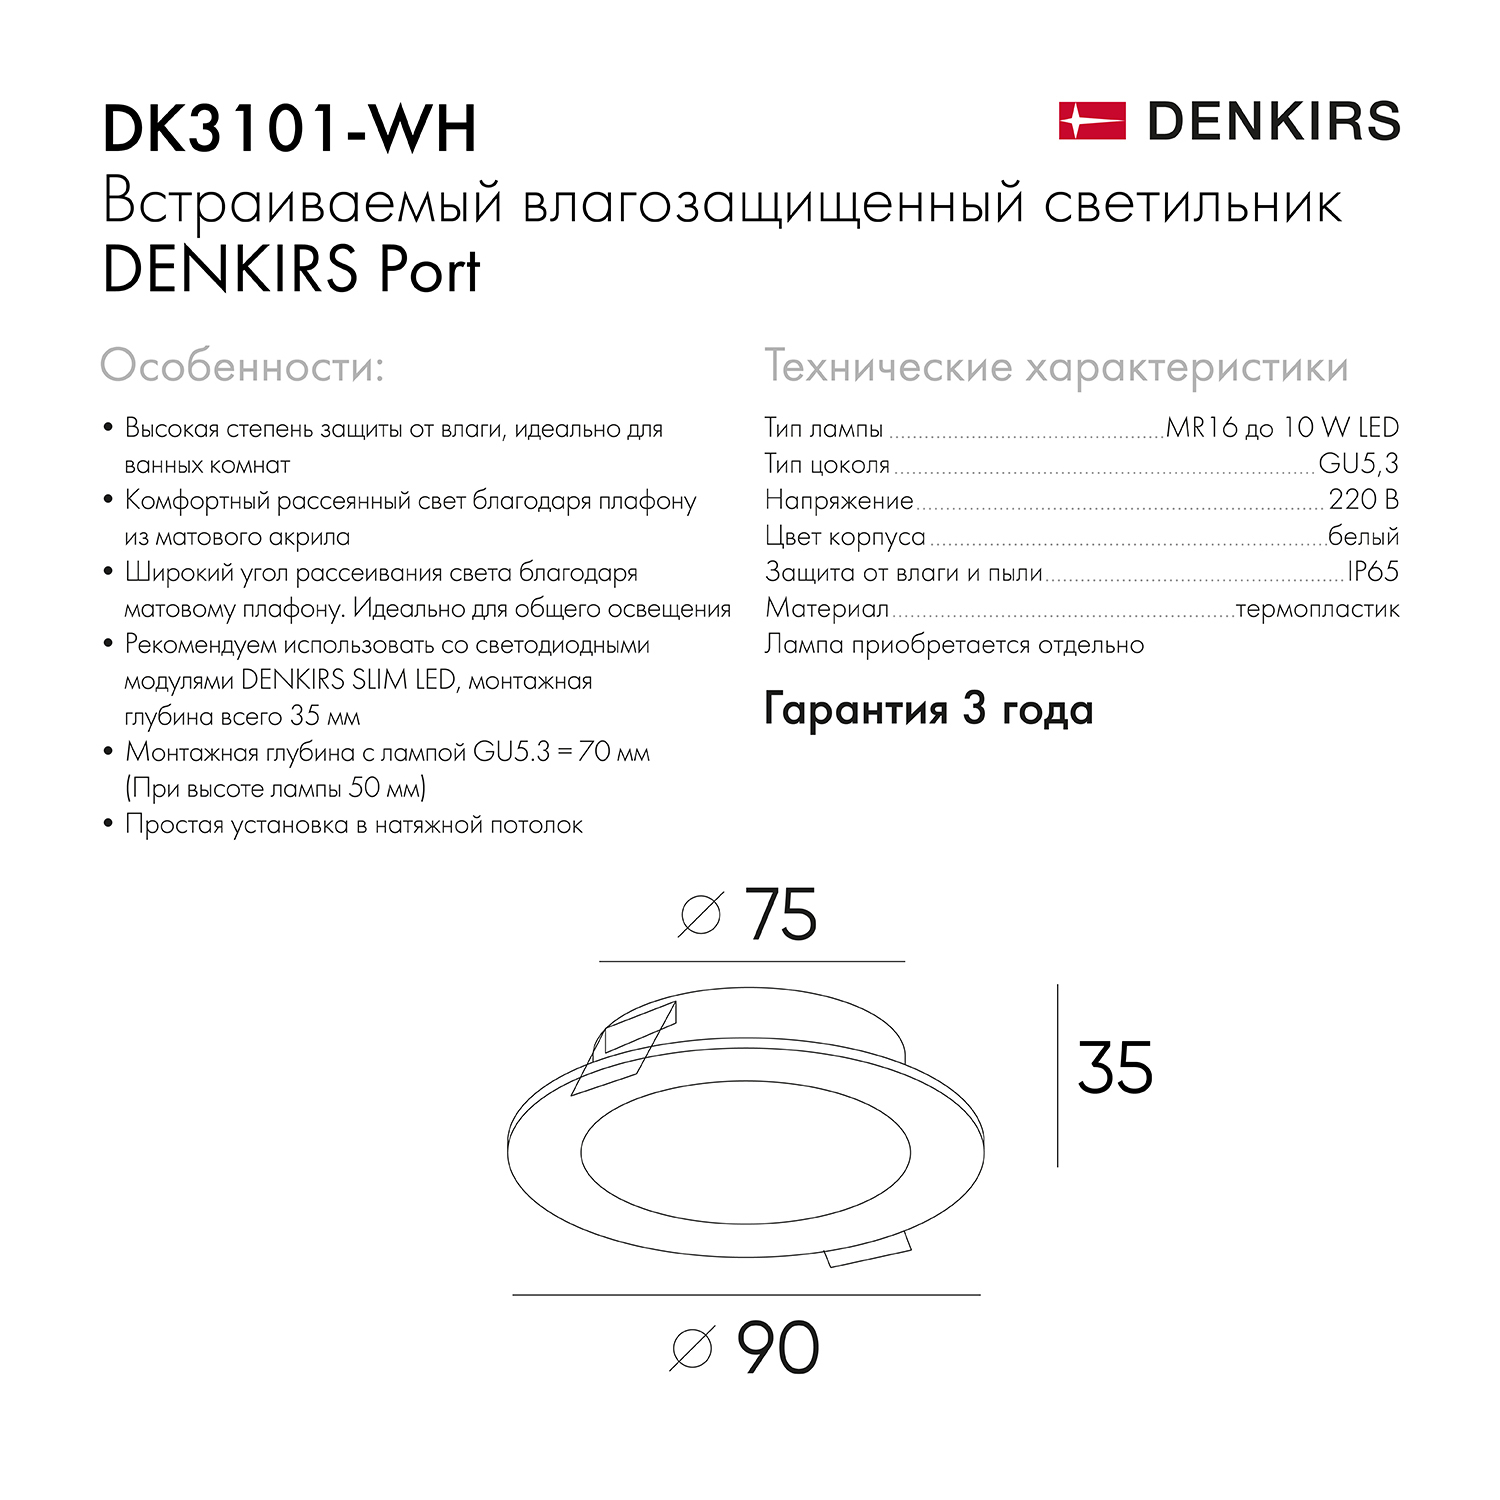 DK3101-WH